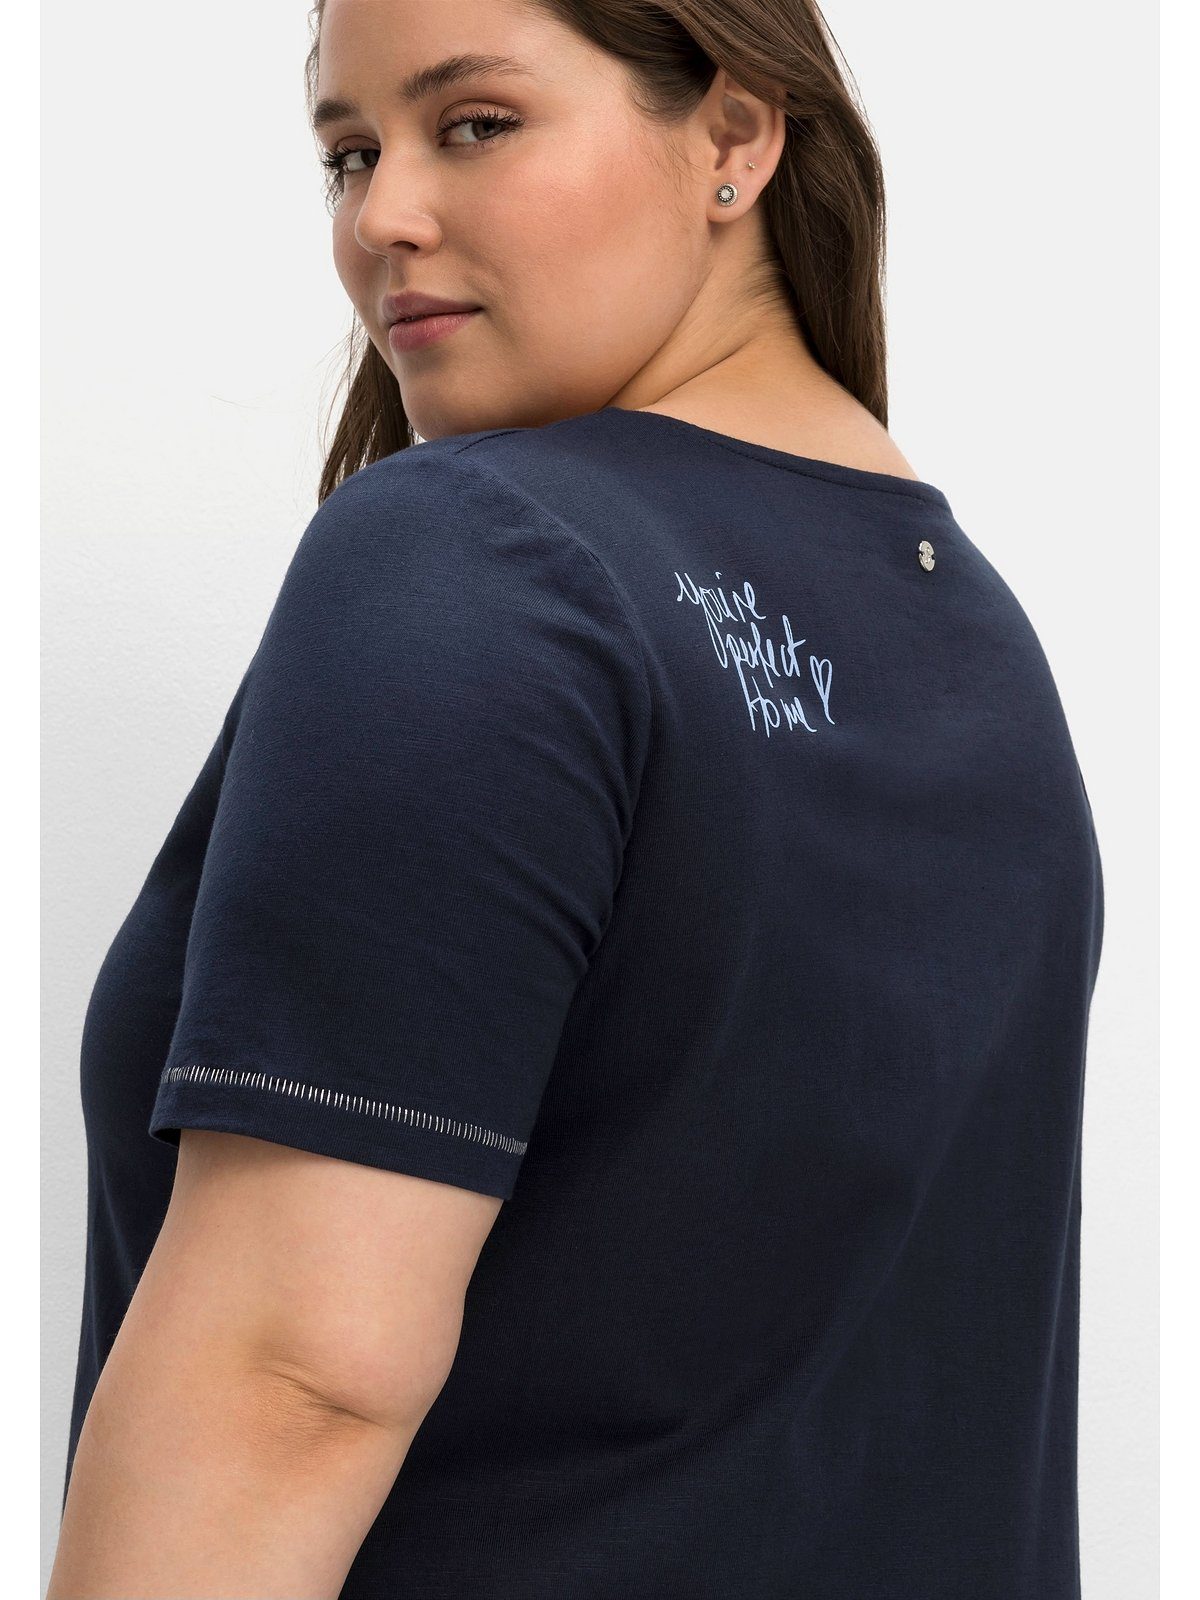 100%ige Echtheitsgarantie! Sheego T-Shirt Große Größen mit Schulter nachtblau der Print hinten auf